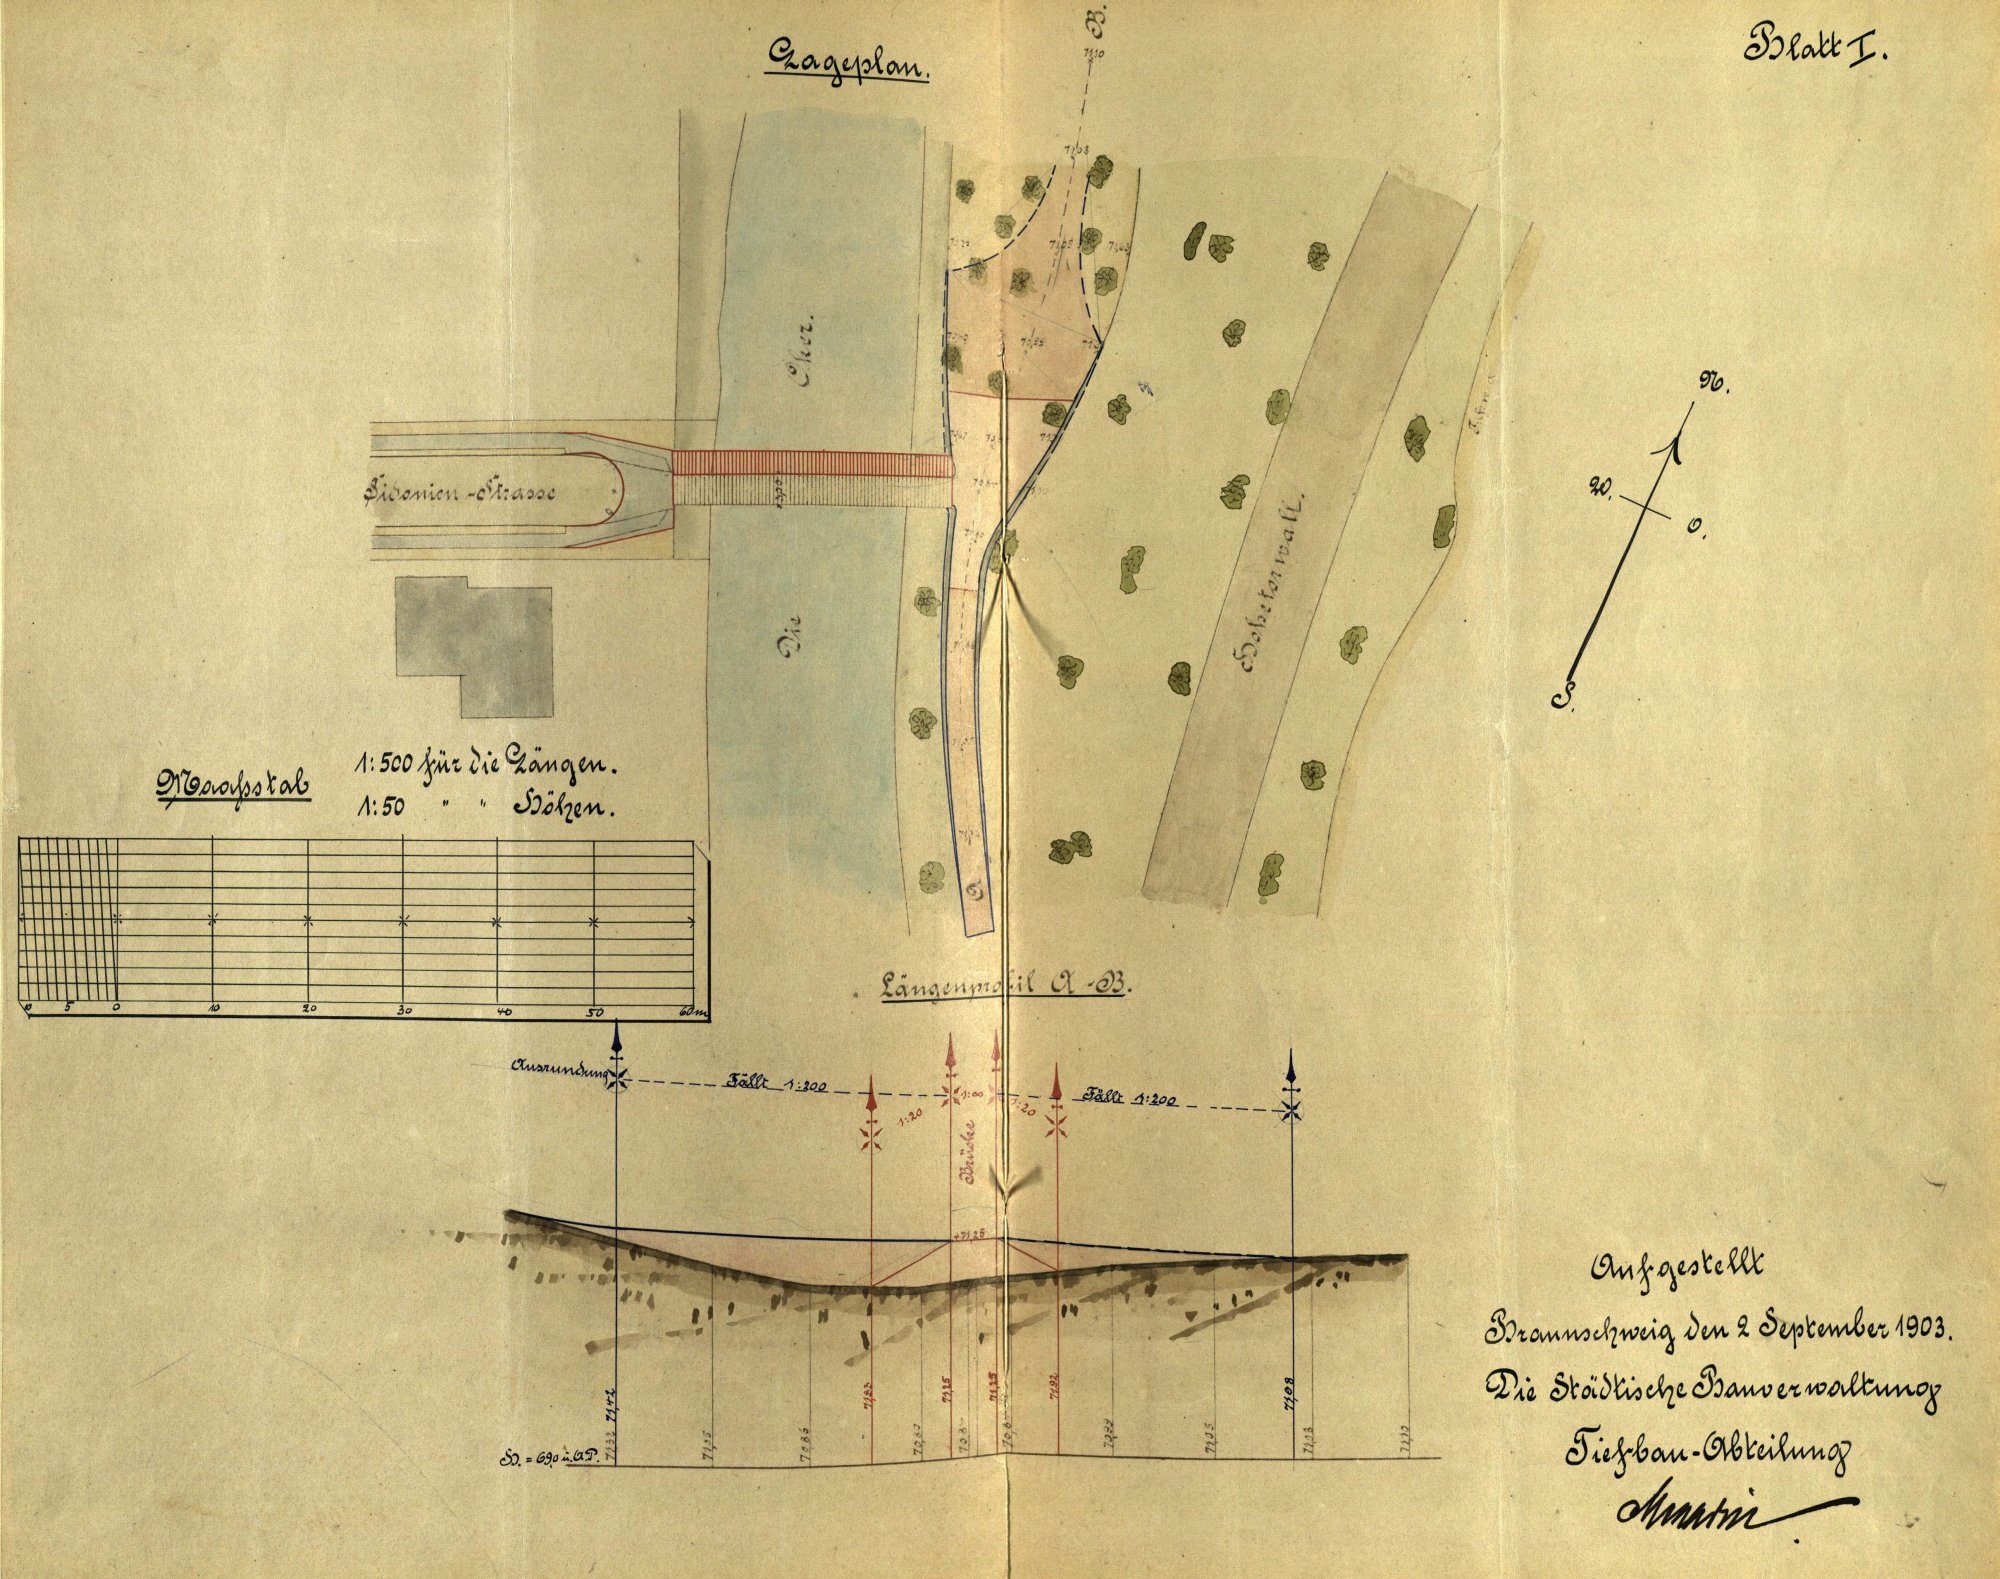 Sidonienbrücke, Lageplan, 1903 (Wird bei Klick vergrößert)